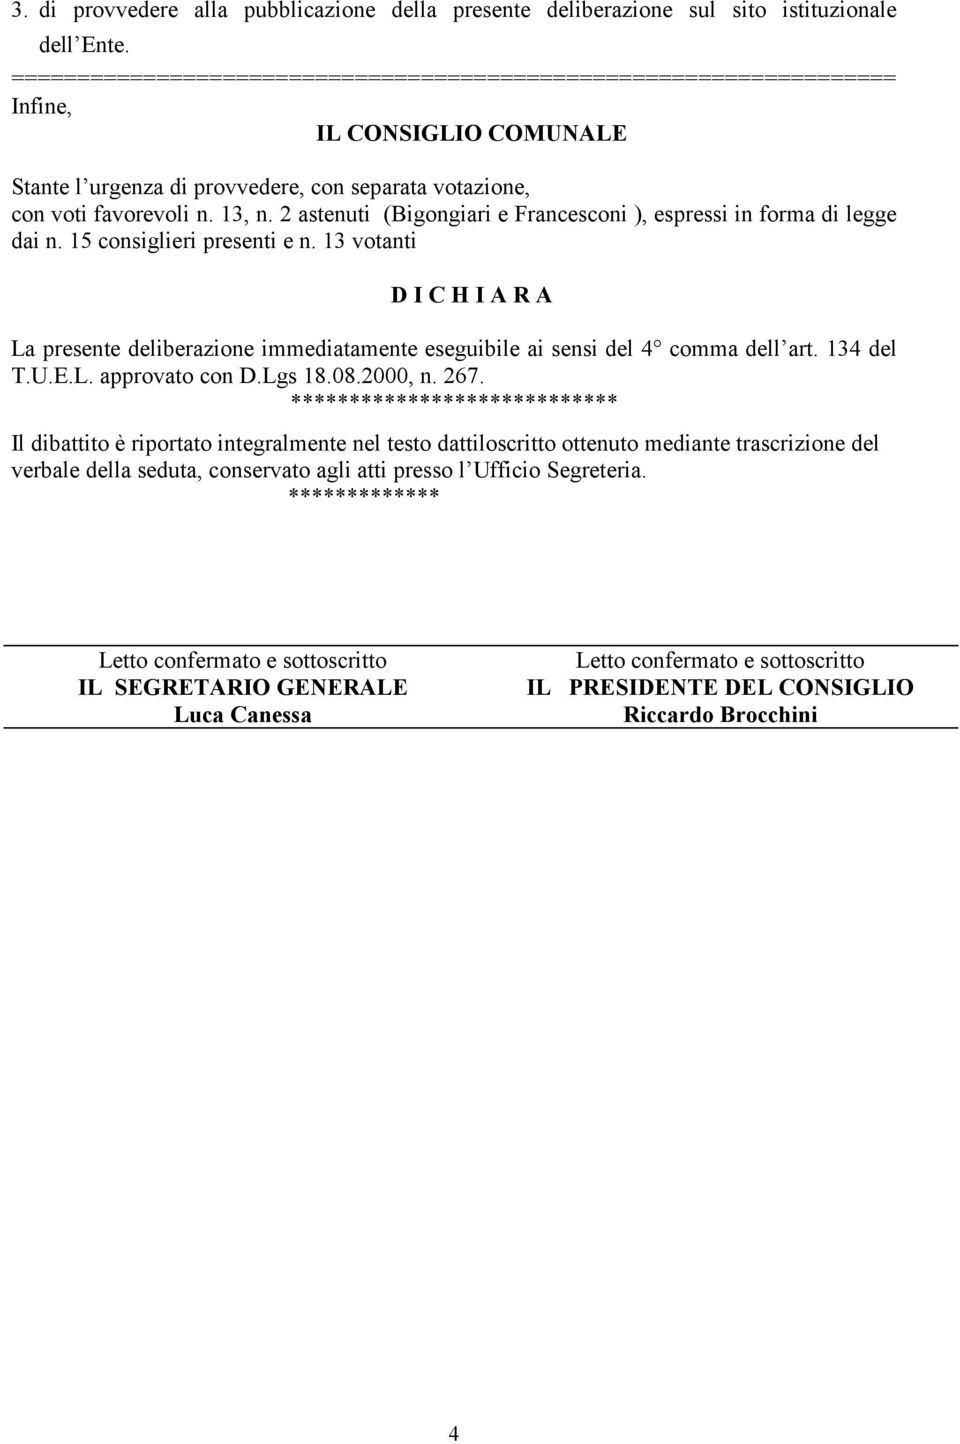 2 astenuti (Bigongiari e Francesconi ), espressi in forma di legge dai n. 15 consiglieri presenti e n.